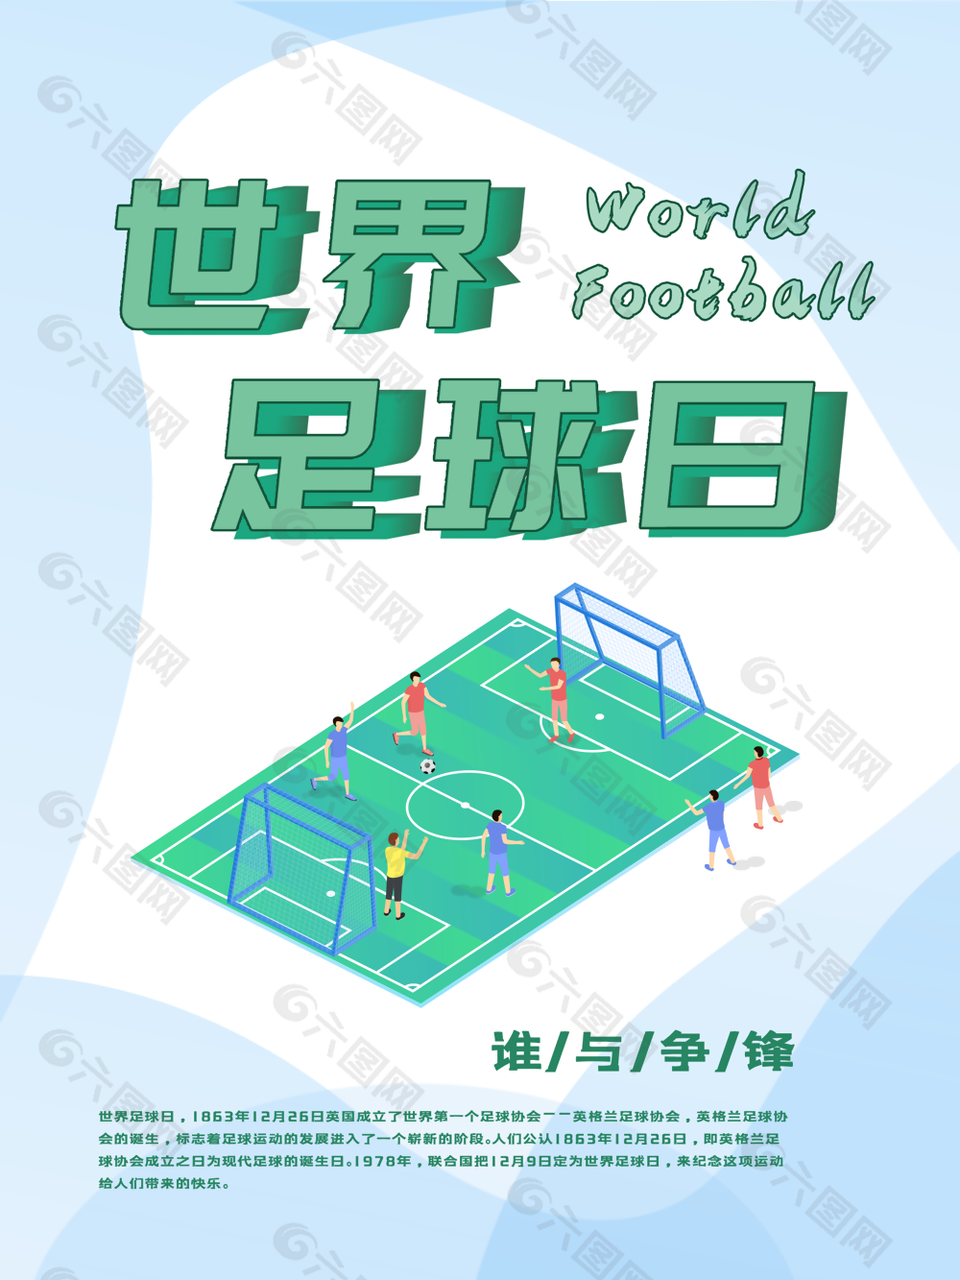 绿色清新简约世界足球日海报图设计